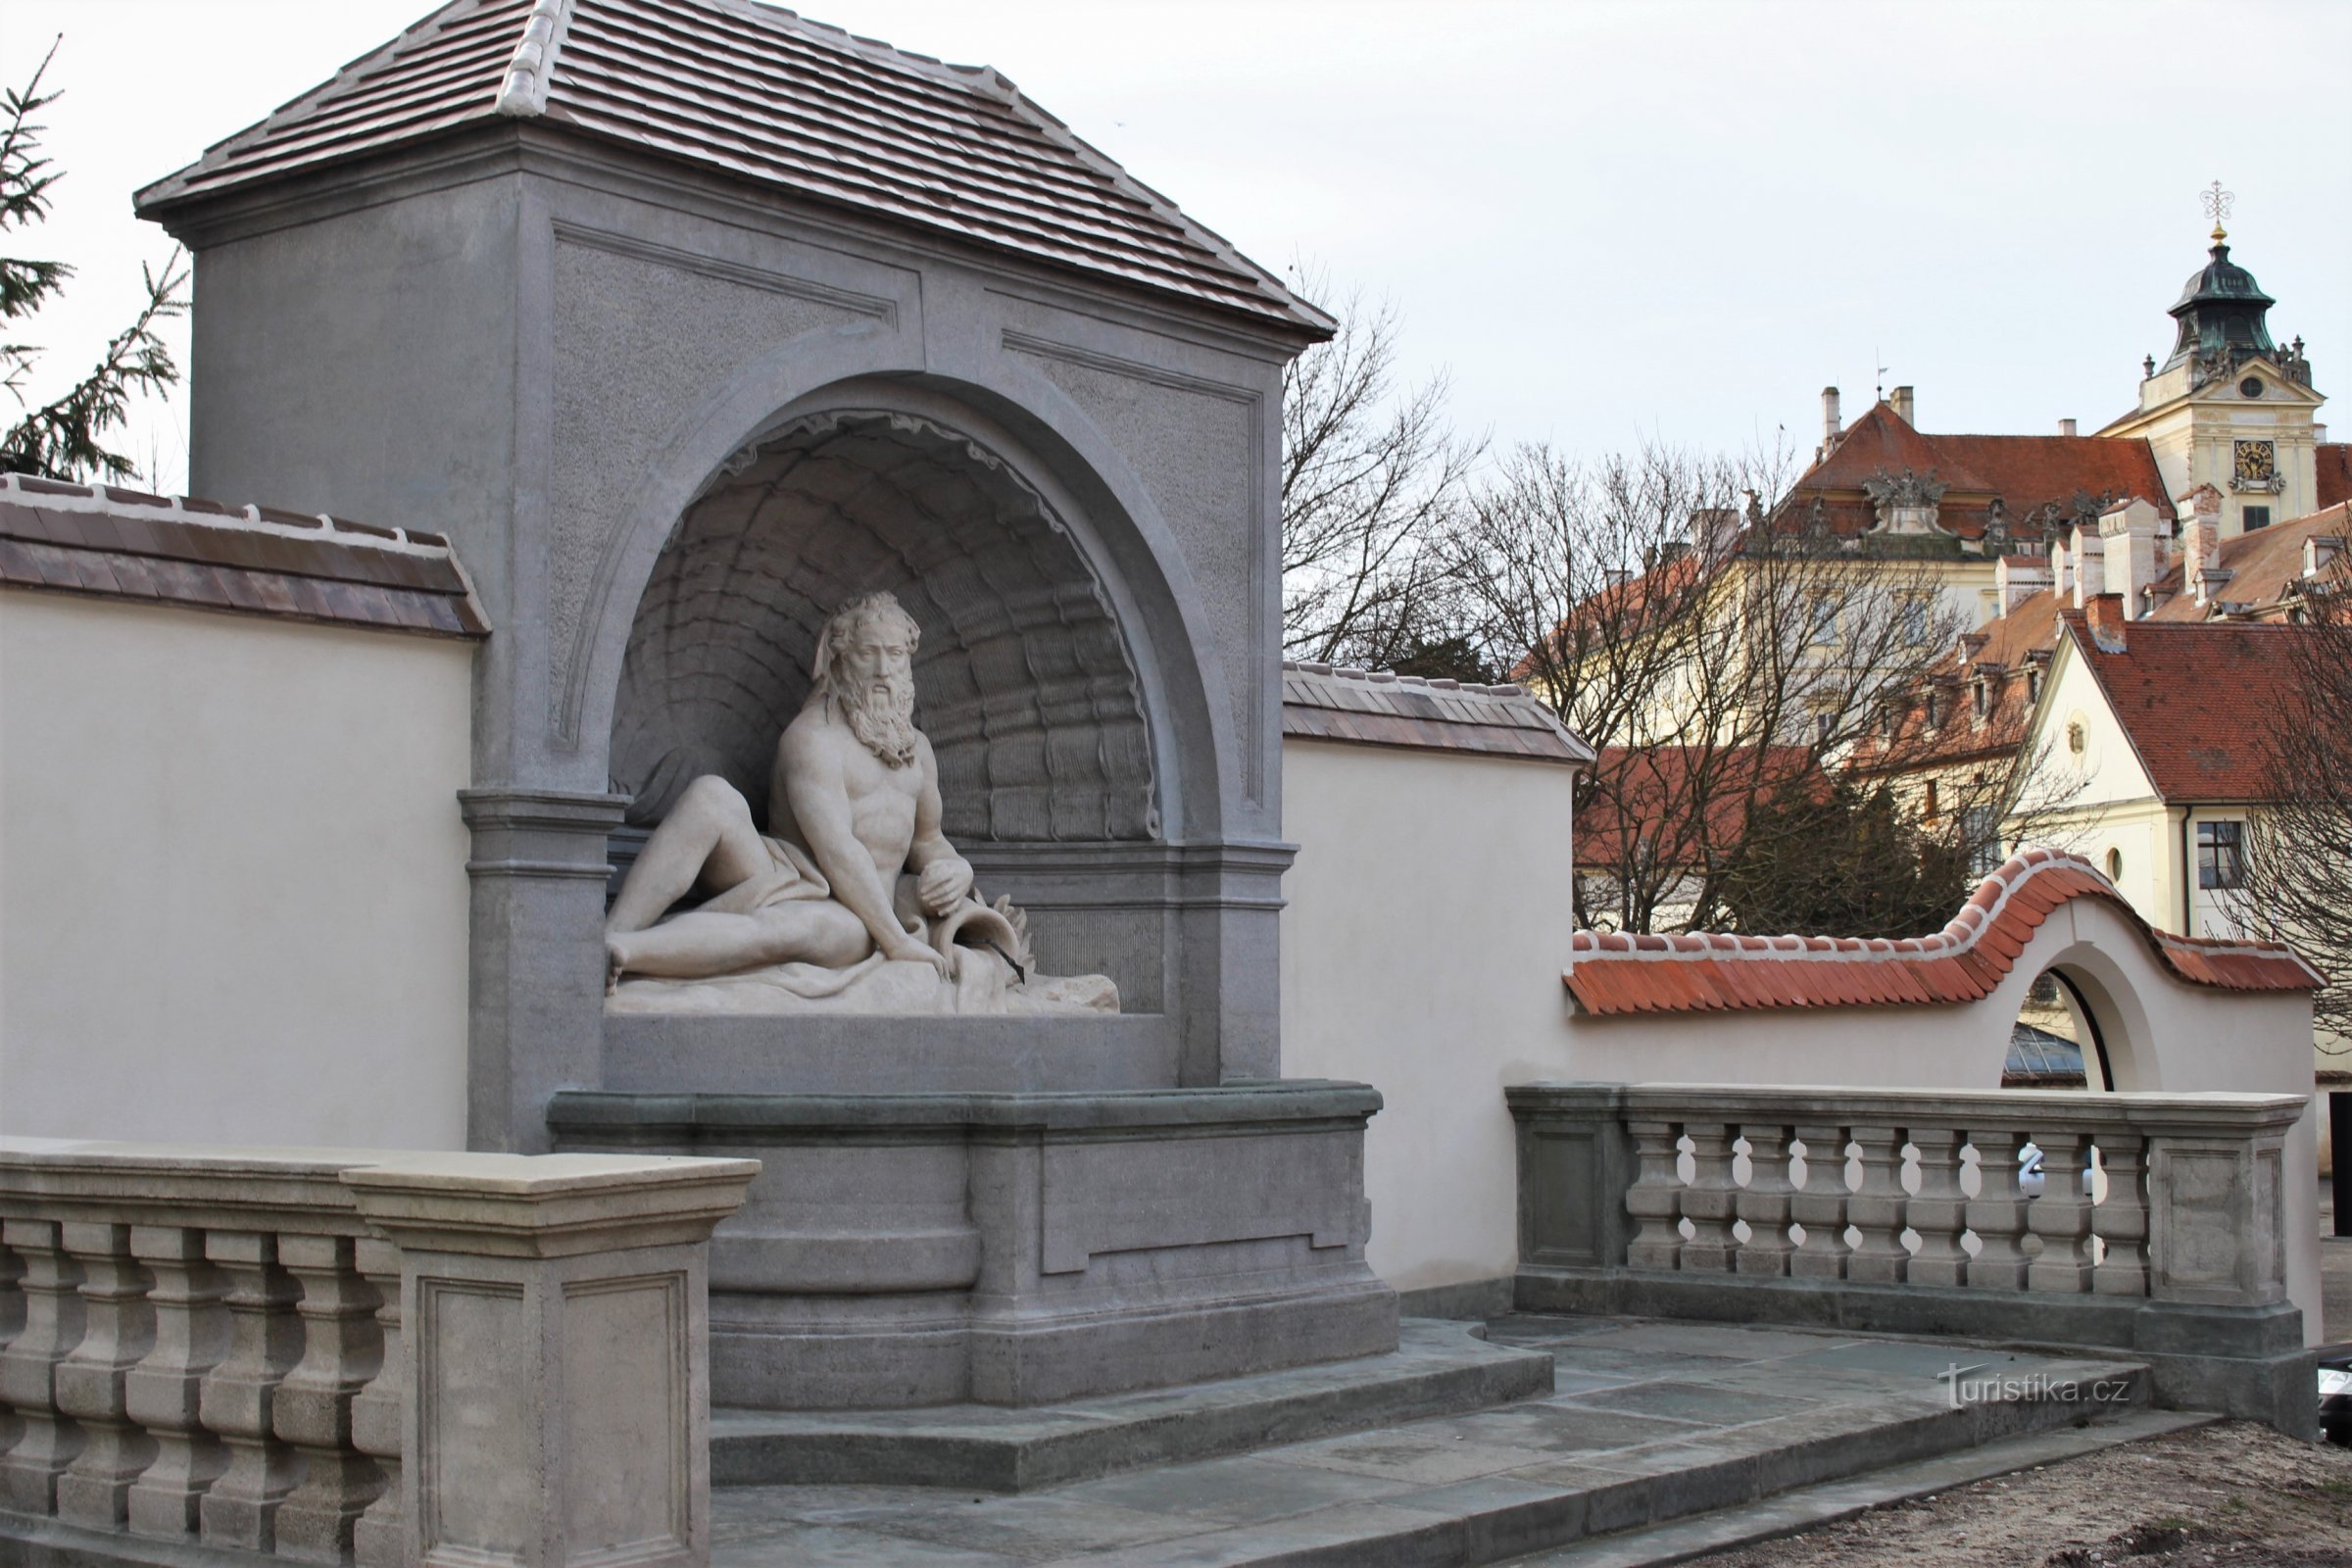 Valtice - Neptunuksen patsas